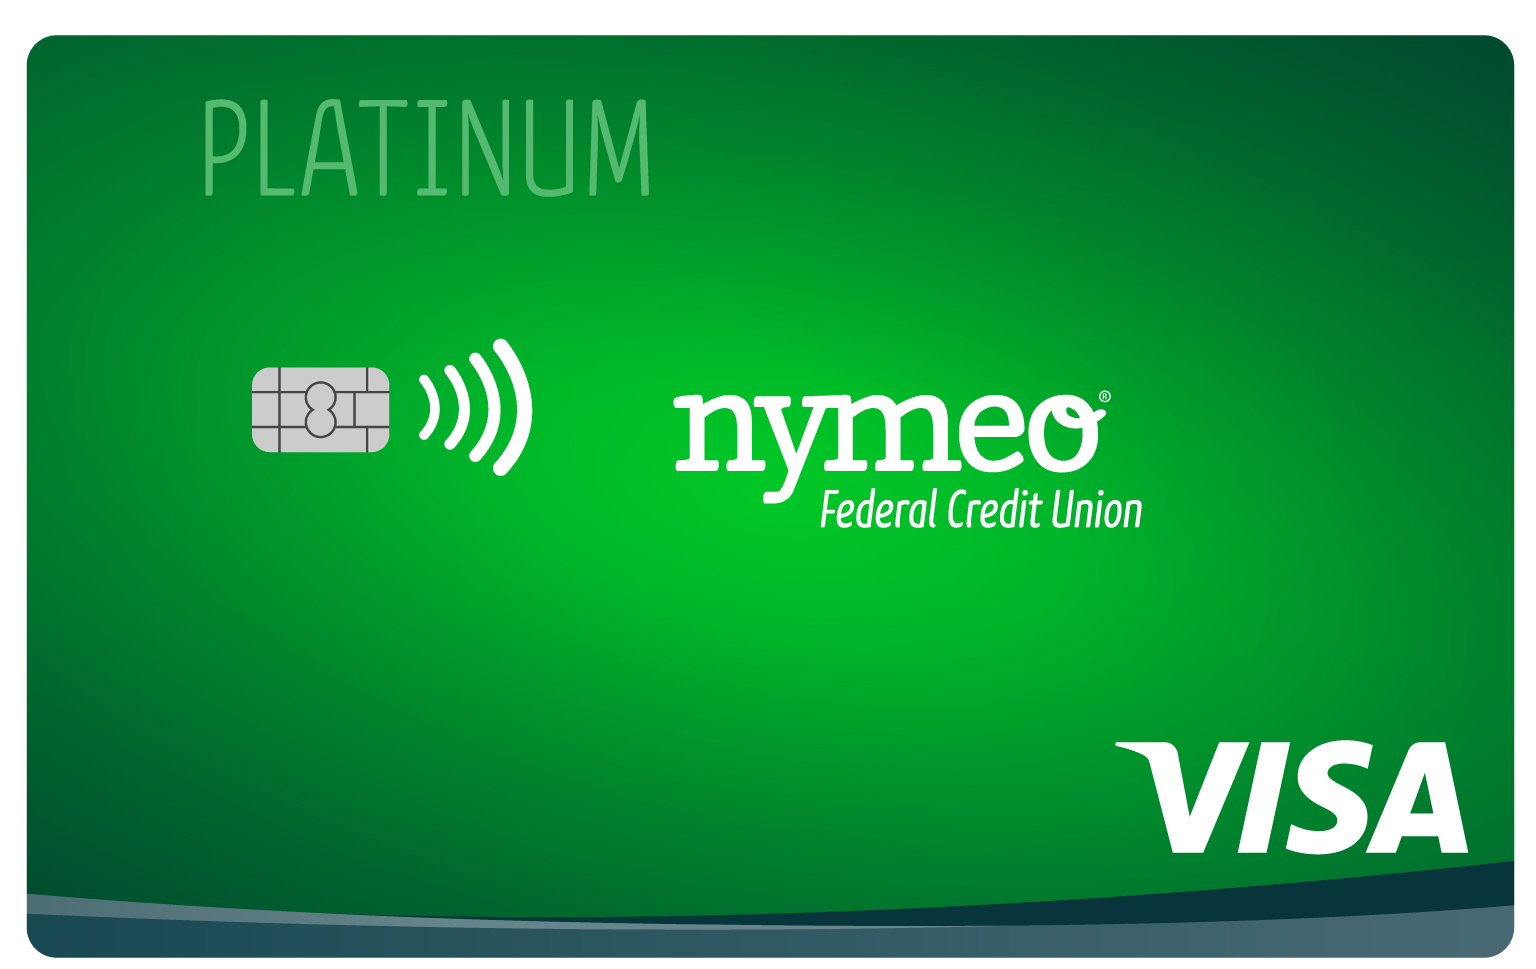 Nymeo Visa Platinum Credit Card